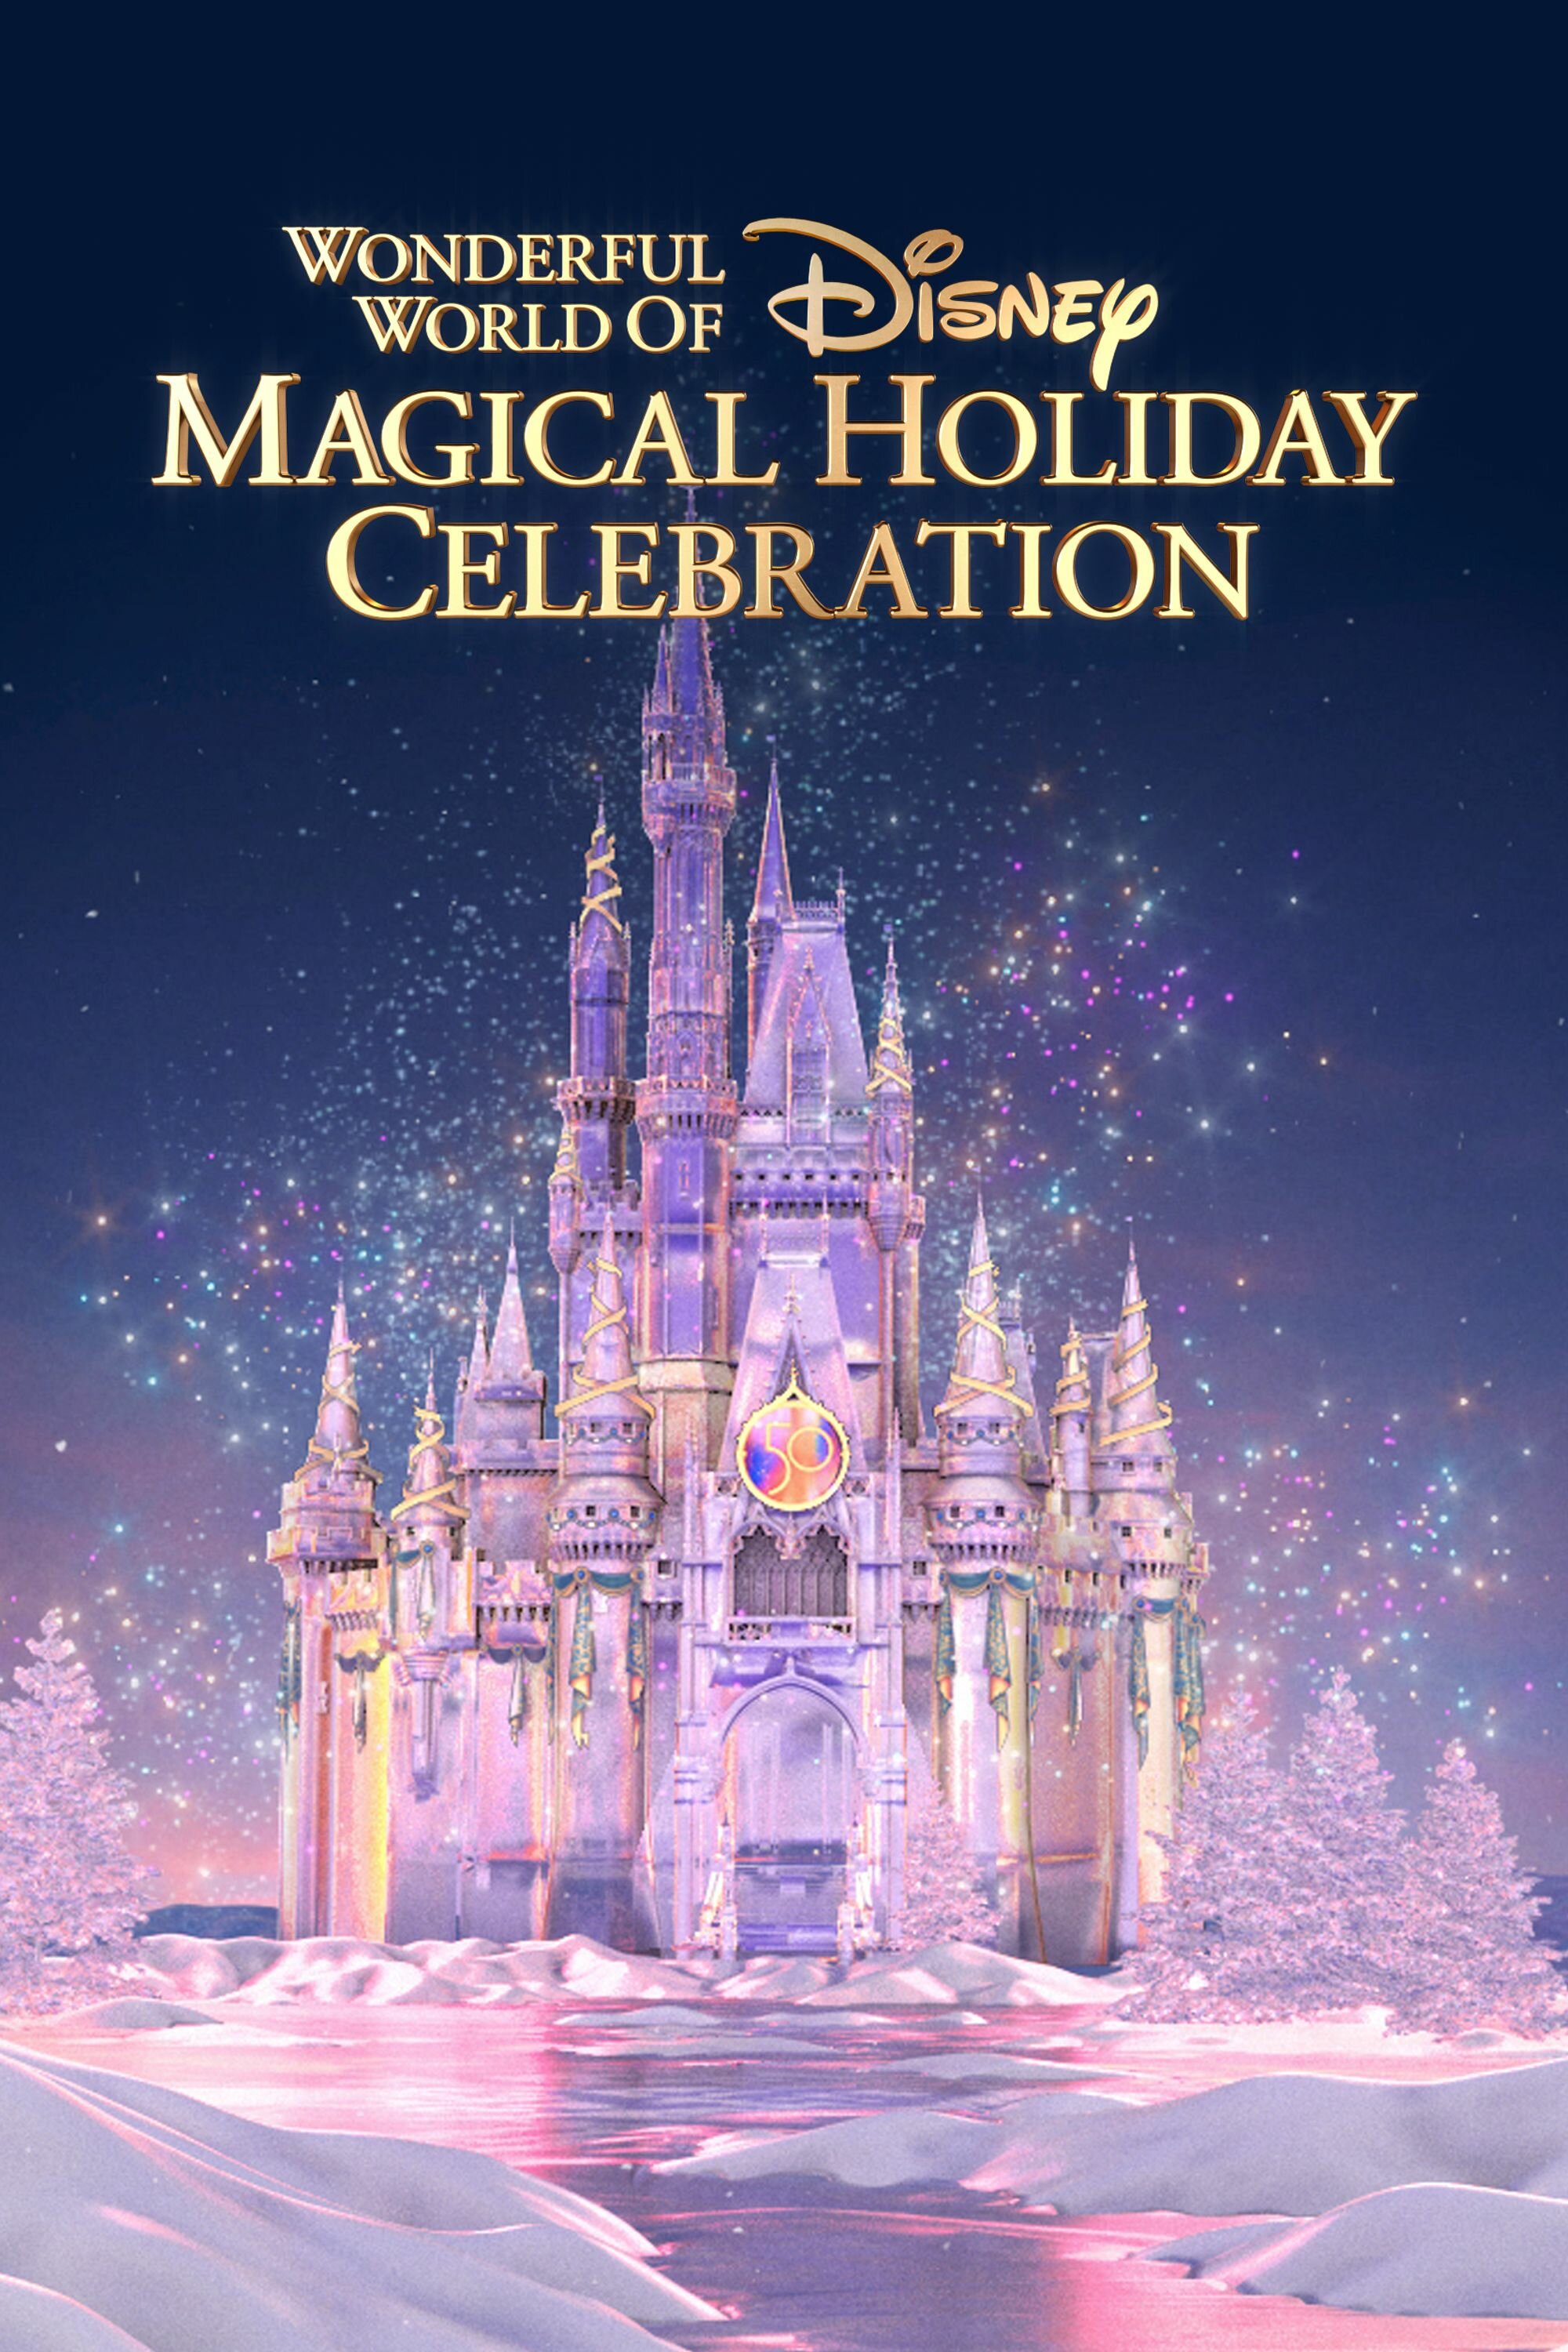 The Wonderful World of Disney: Magical Holiday Celebration ne zaman